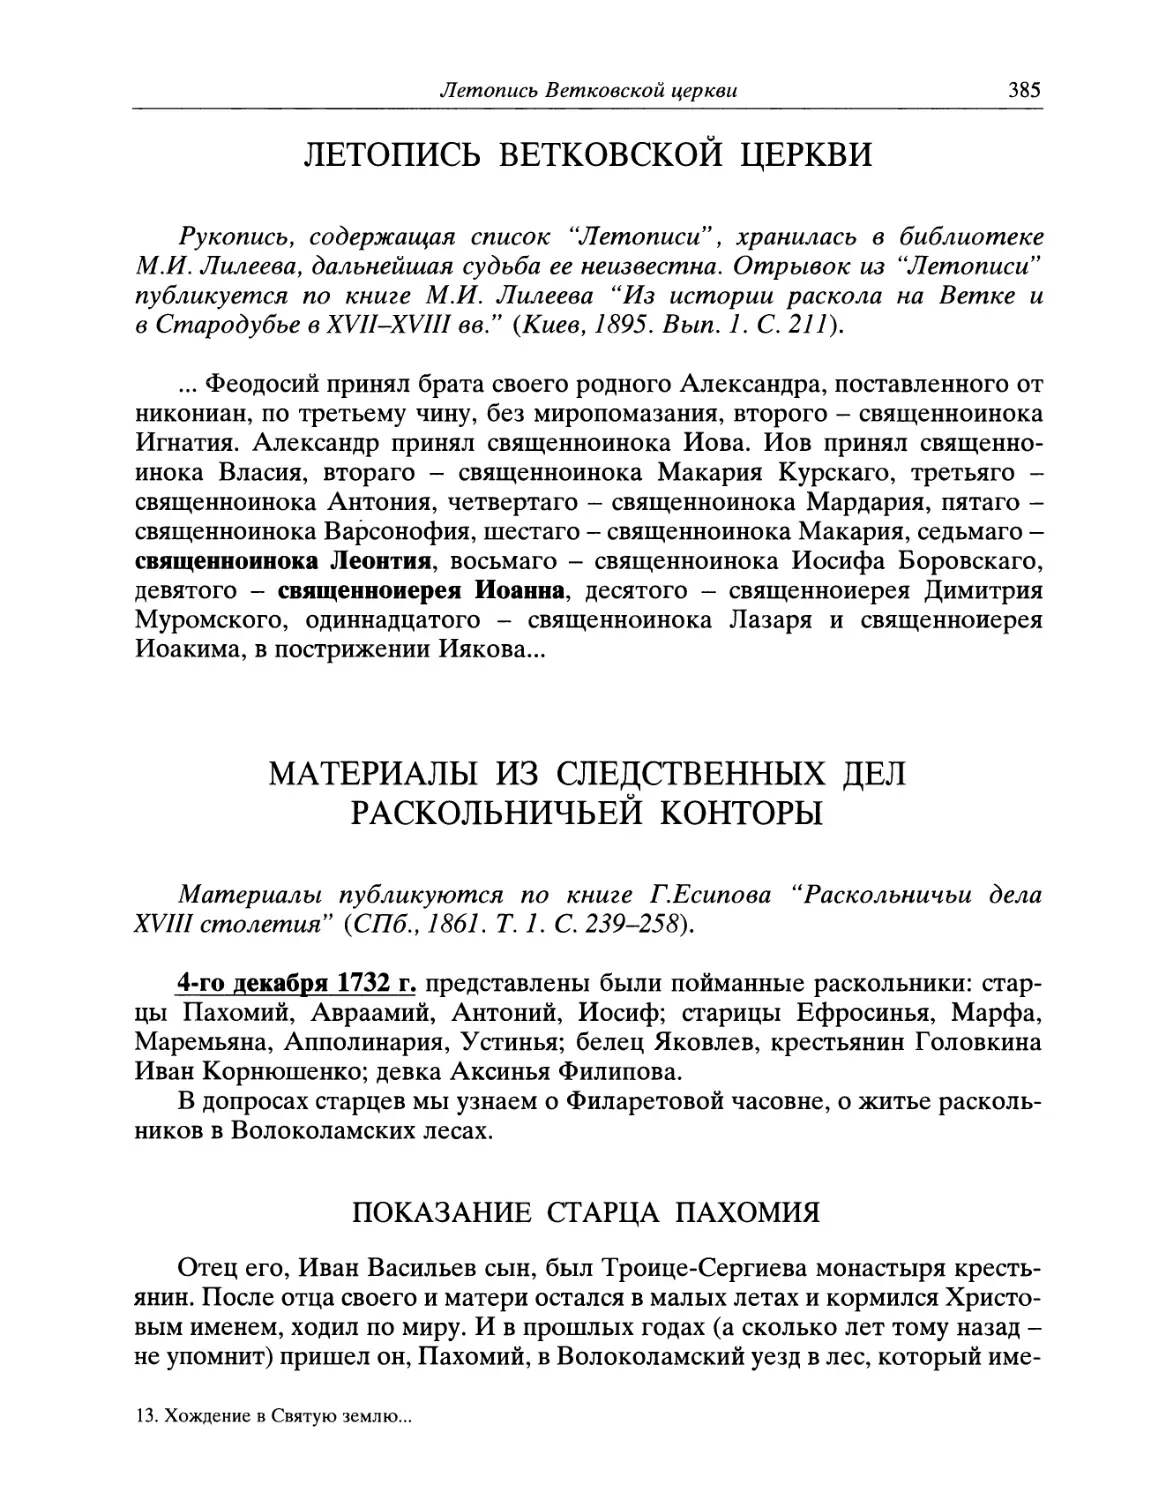 Летопись Ветковской церкви
Материалы из следственных дел Раскольничьей конторы